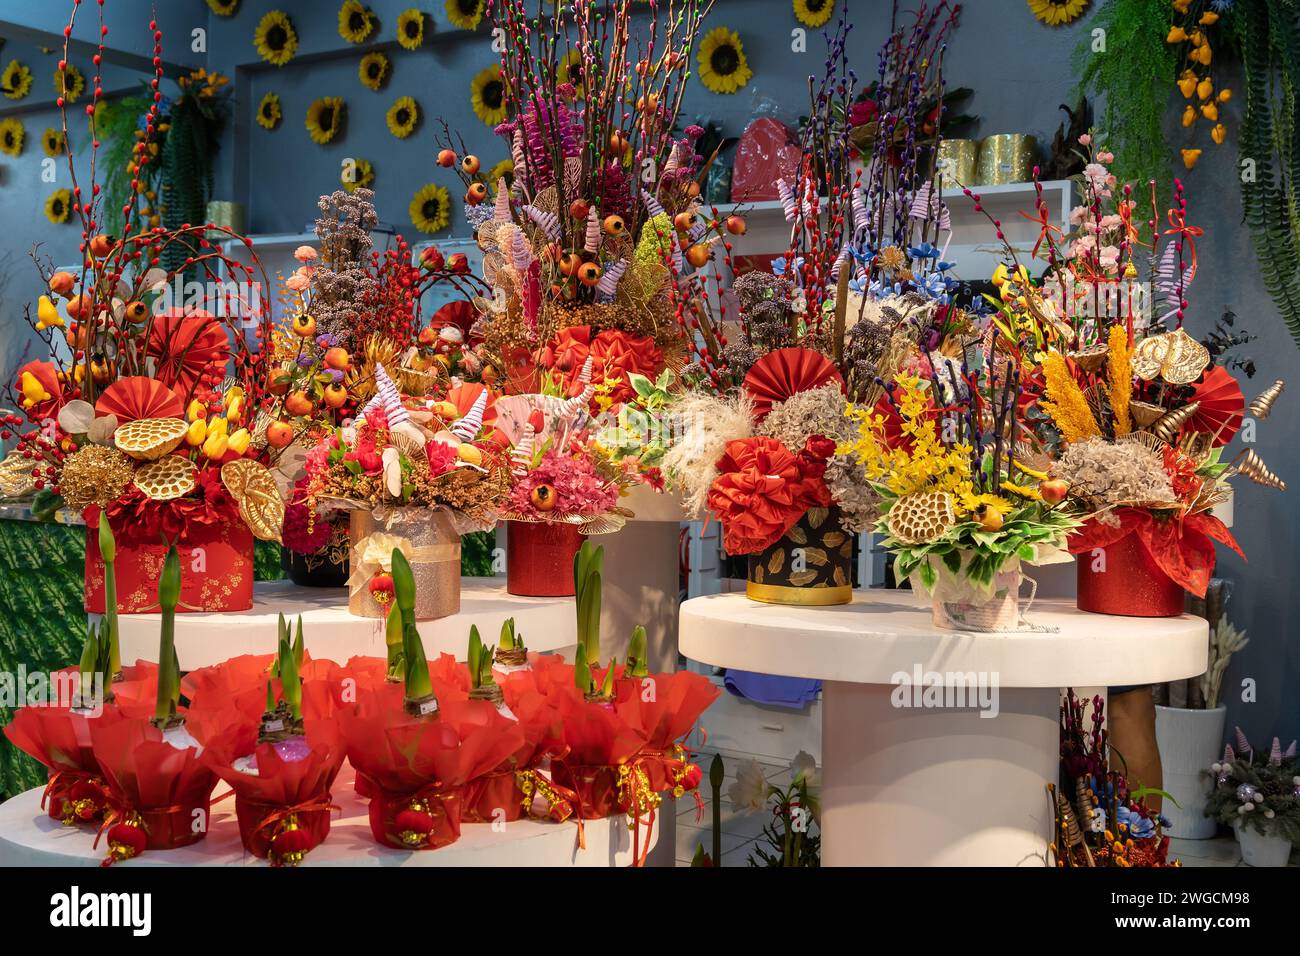 Belle vitrine de magasin de fleurs avec grand assortiment de décoration de fleurs artificielles pendant le nouvel an chinois. Banque D'Images